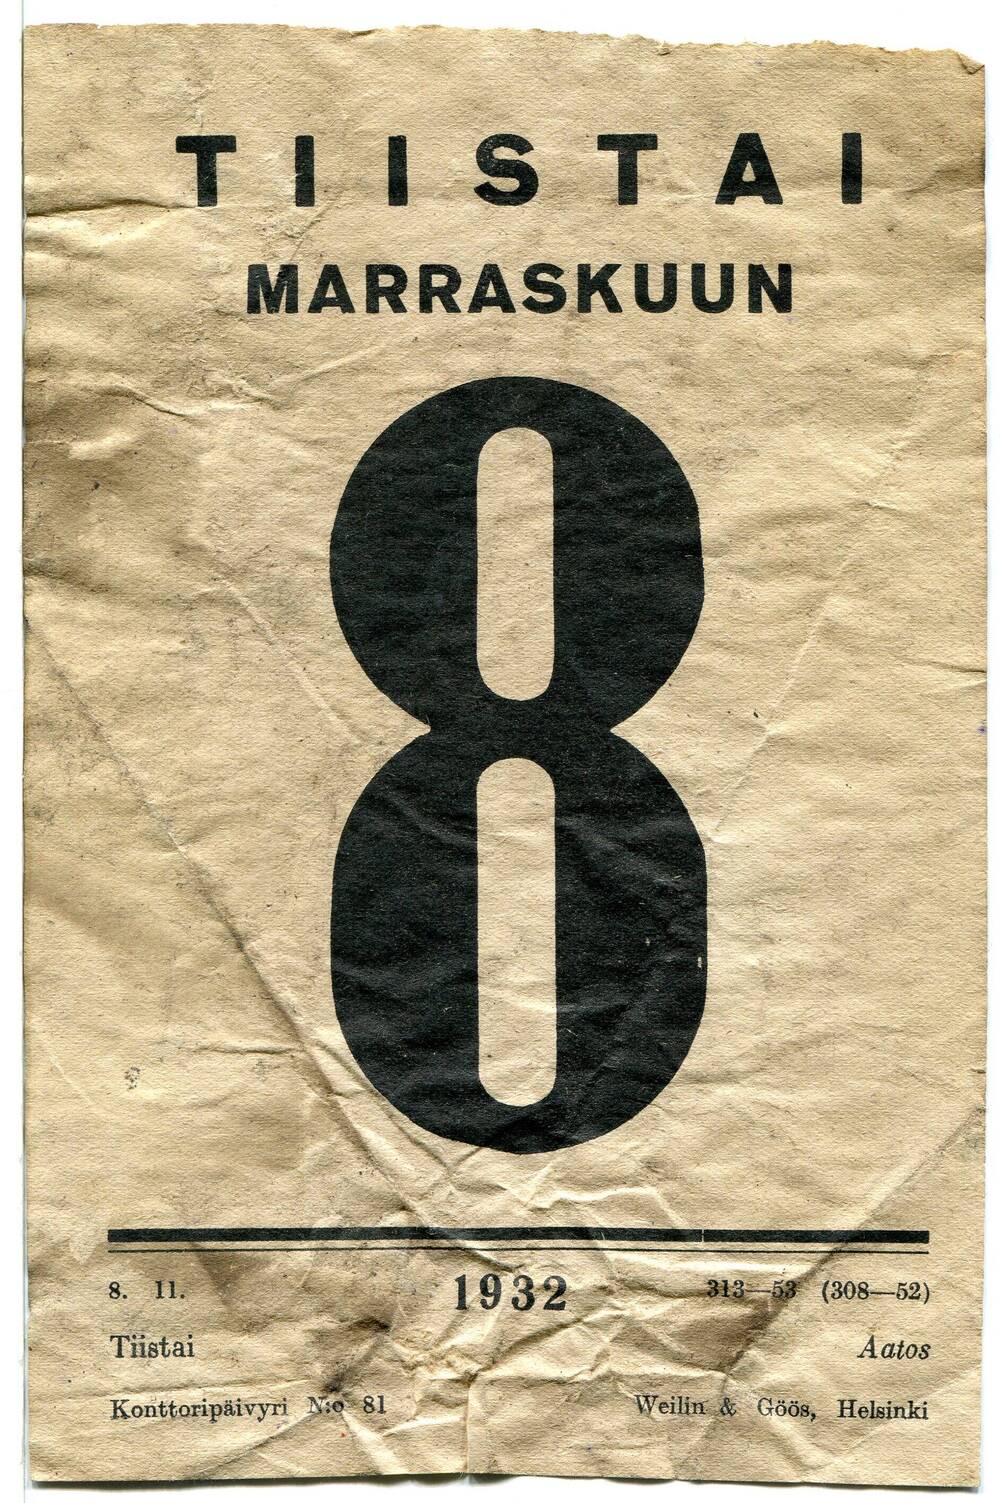 Лист отрывного календаря. «Tiistai  marraskuu 8» (вторник 8 ноября). Республика Финляндия, 1932 г.